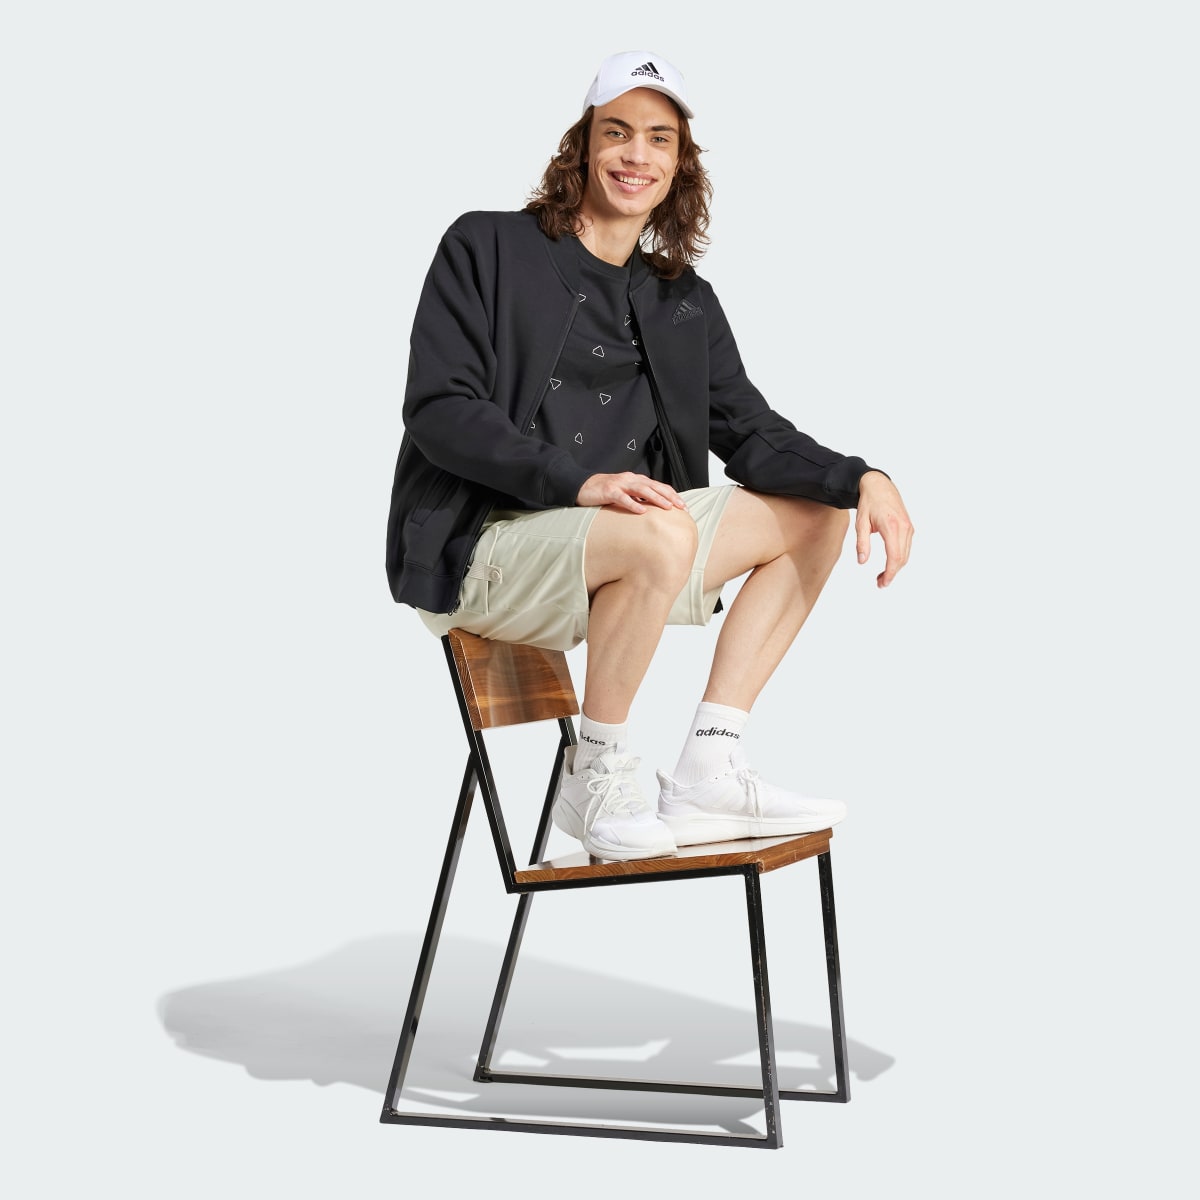 Adidas Lounge Fleece Bomber Jacket With Zip Opening. 4